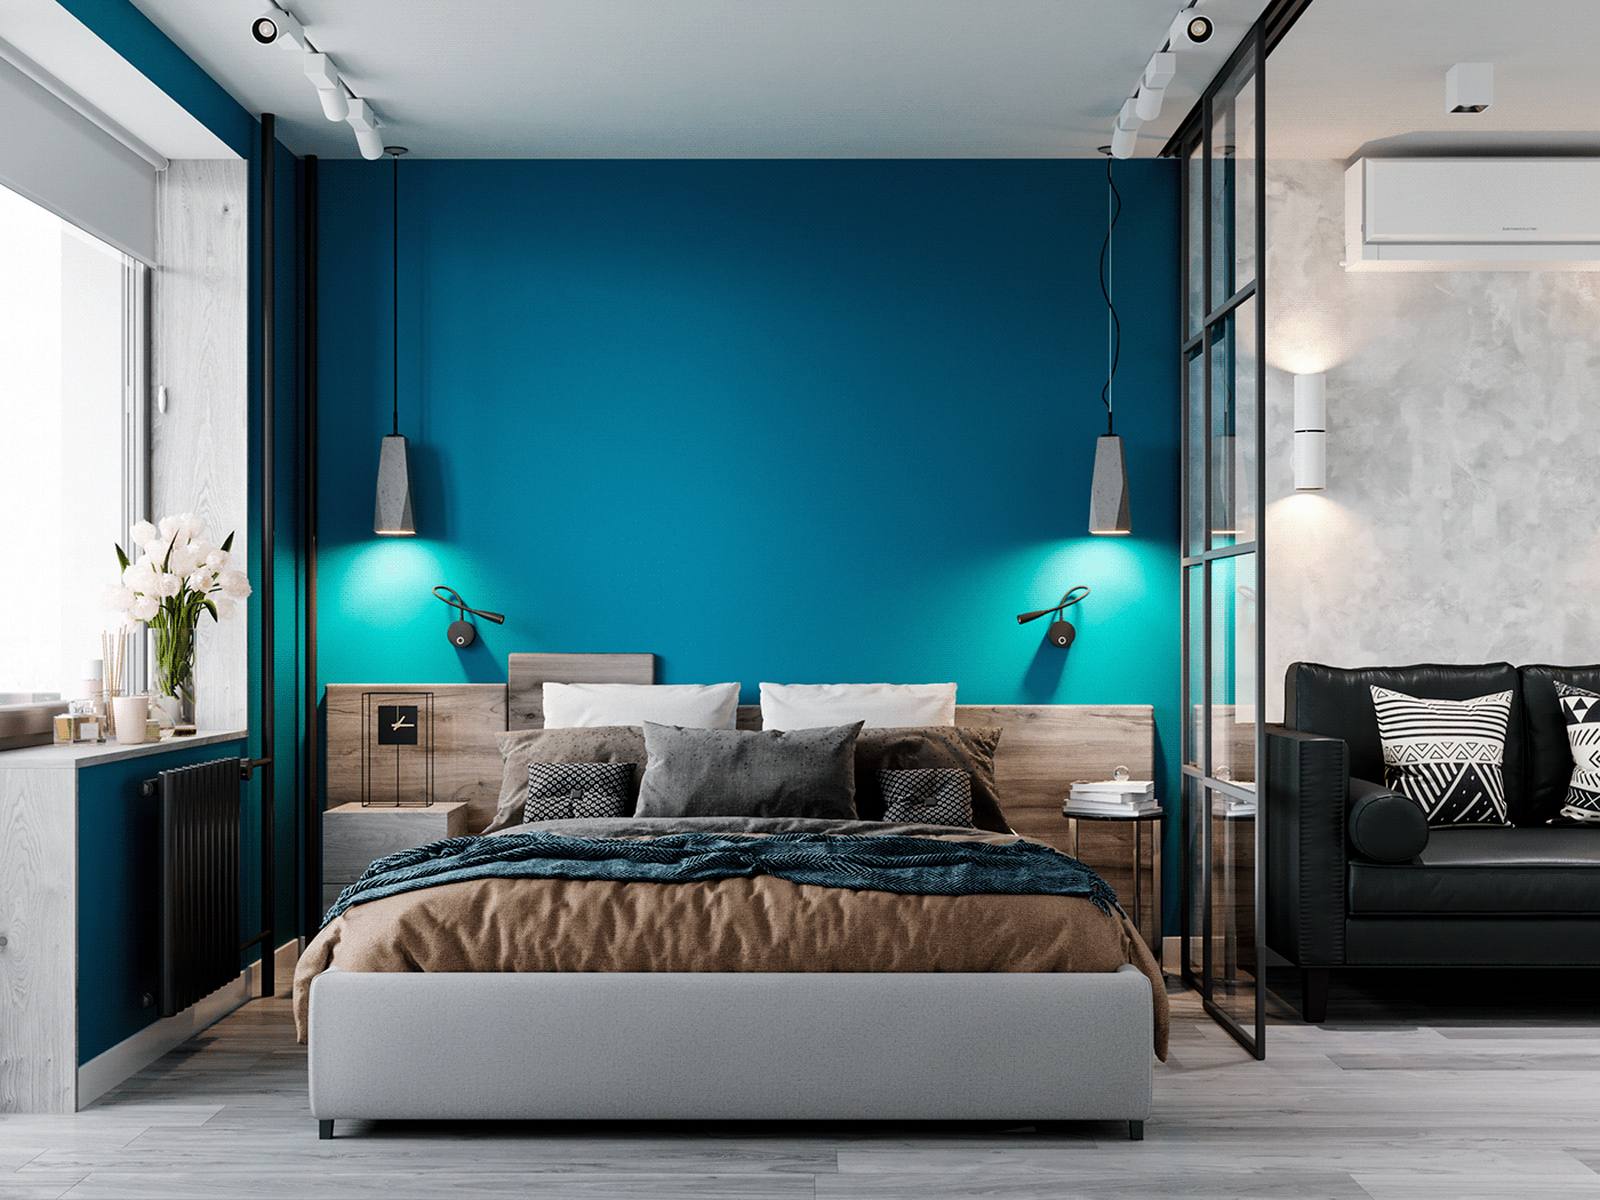 Phòng ngủ của bố mẹ với bức tường màu xanh lam đậm làm điểm nhấn nổi bật giữa không gian toàn sắc trắng và xám. Đầu giường bằng gỗ cho cảm giác vững chãi, hệ thống đèn gắn tường và đèn thả trần 'có đôi có cặp' tạo nên sự cân đối hài hòa.